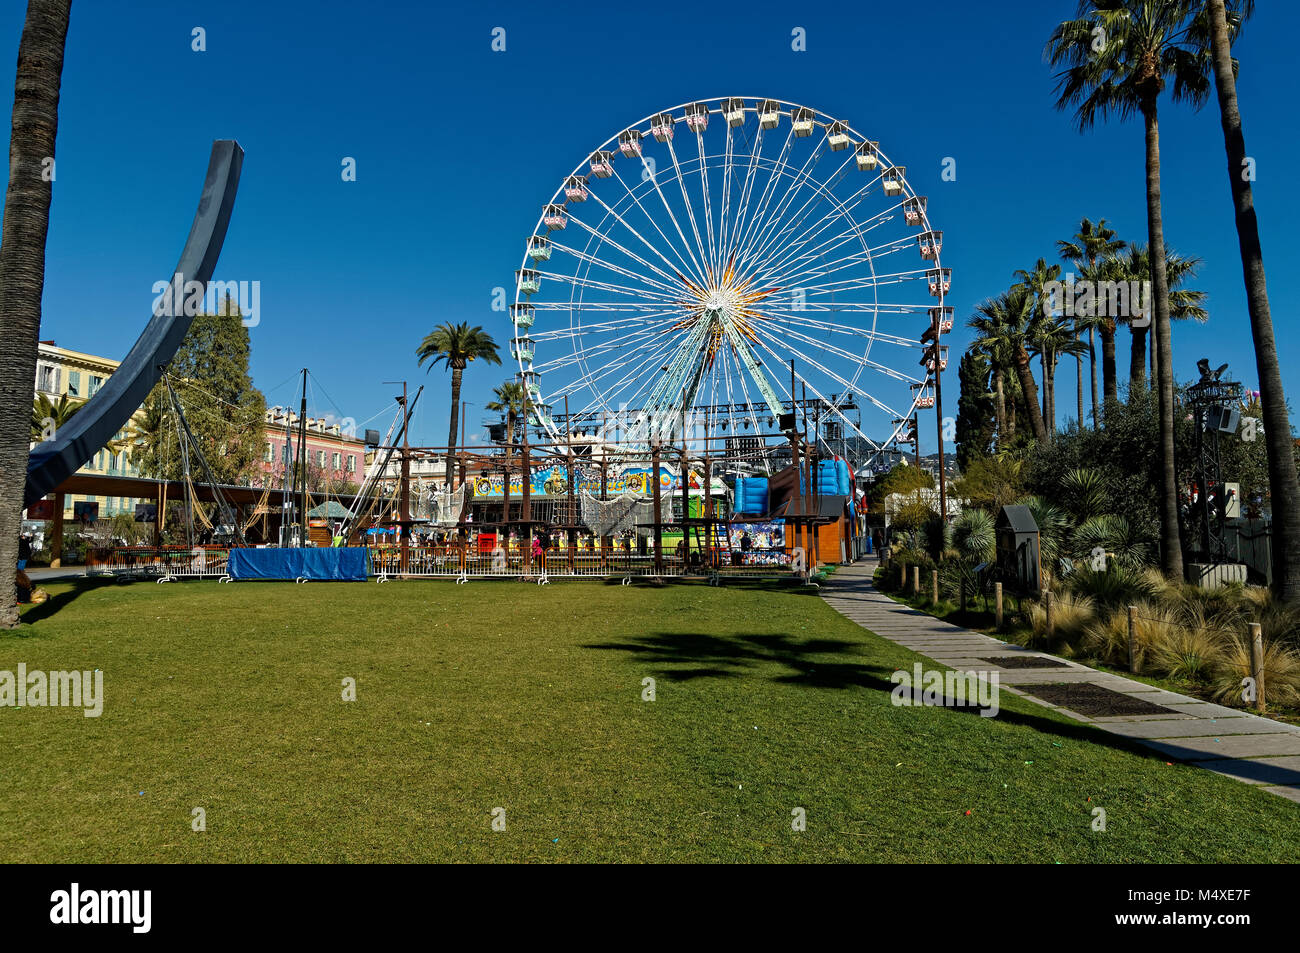 Ruota panoramica Ferris nella città di Nizza costa azzurra, durante il periodo invernale Foto Stock